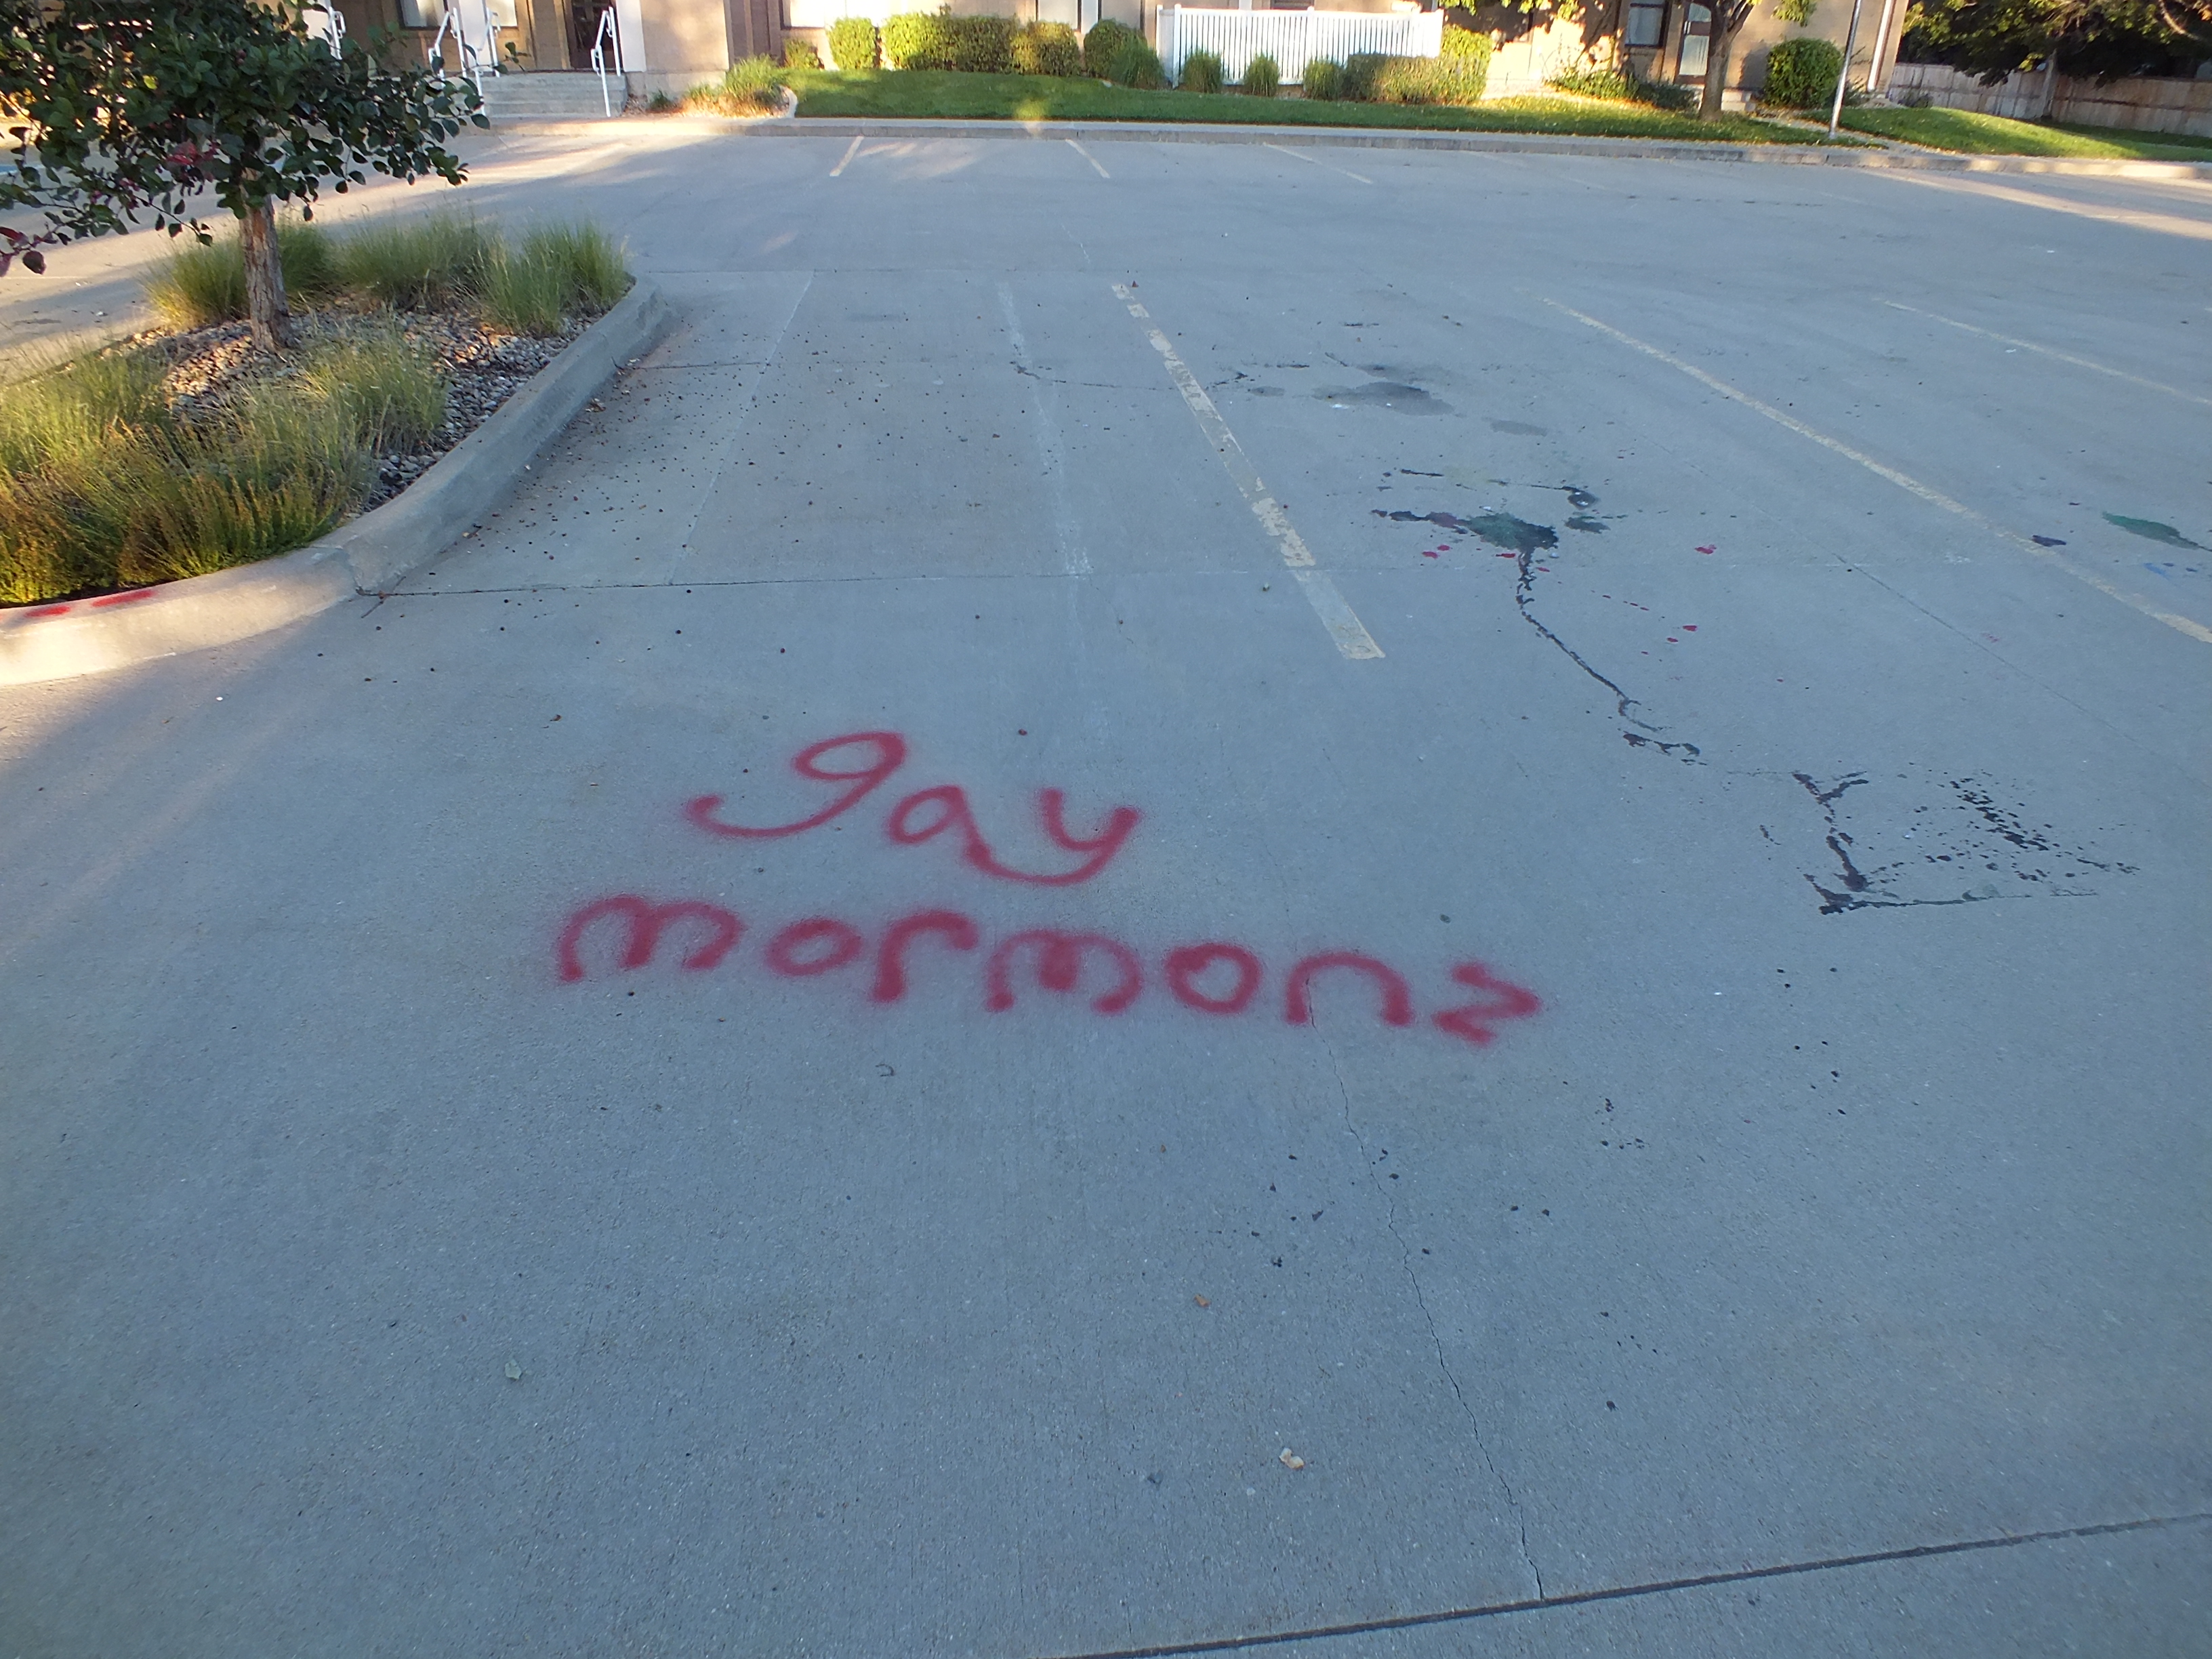 Image 3 : graffiti rouge sur le trottoir qui dit